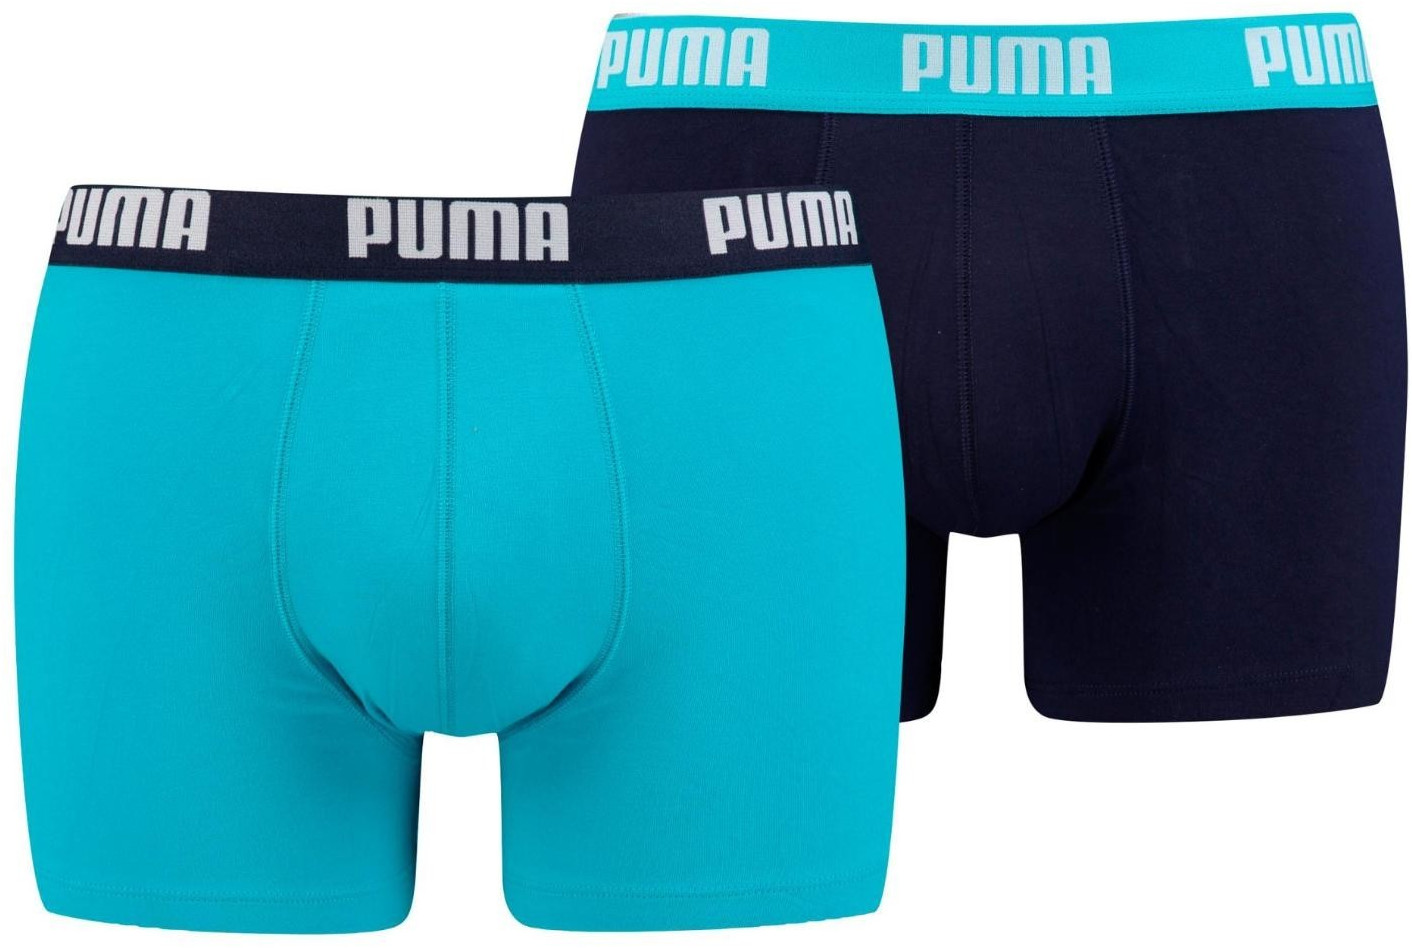 Puma Boxer (521015001-796) 9,99 ab bei Preisvergleich | Shorts 2er-Pack €